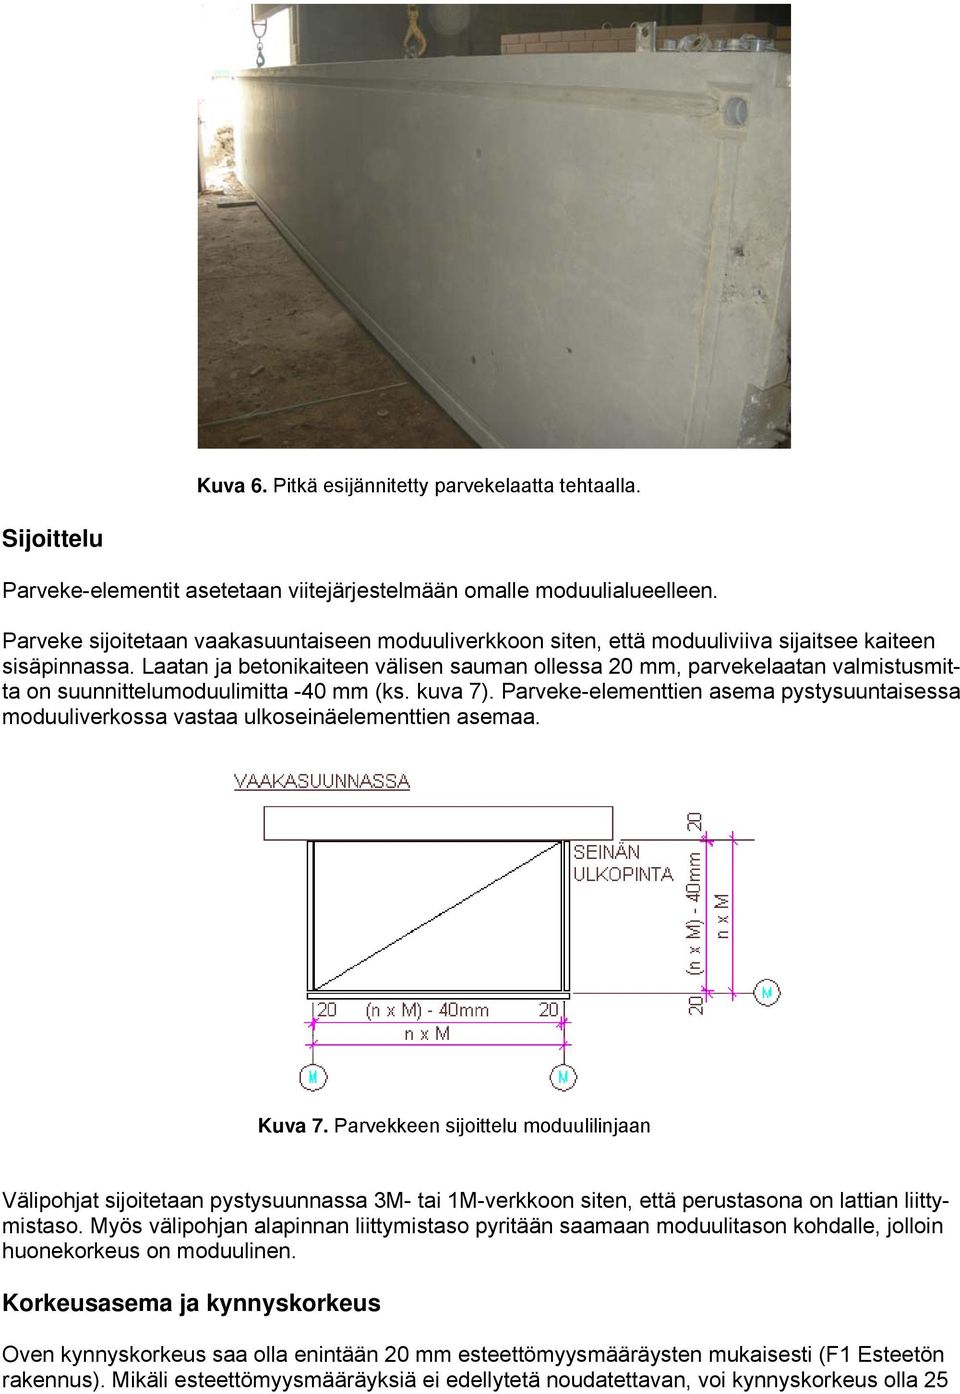 Laatan ja betonikaiteen välisen sauman ollessa 20 mm, parvekelaatan valmistusmitta on suunnittelumoduulimitta -40 mm (ks. kuva 7).